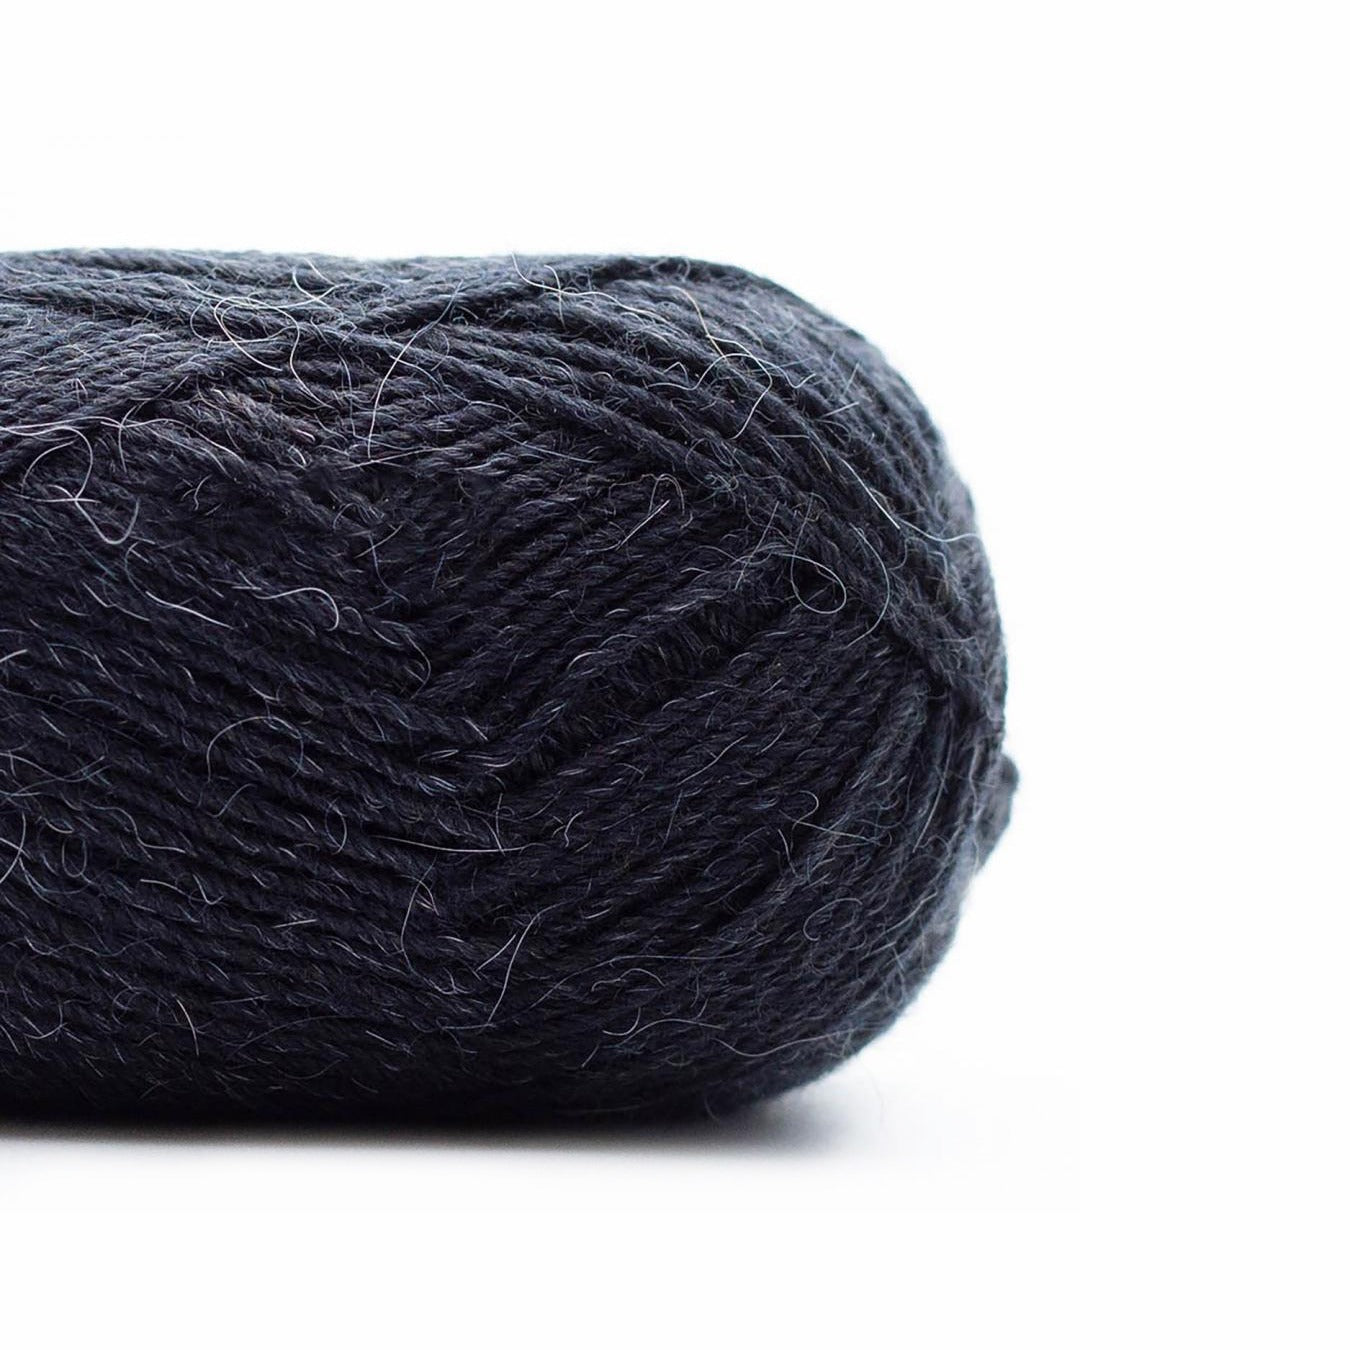 Kremke Soul Wool AUQUA sock yarn undyed